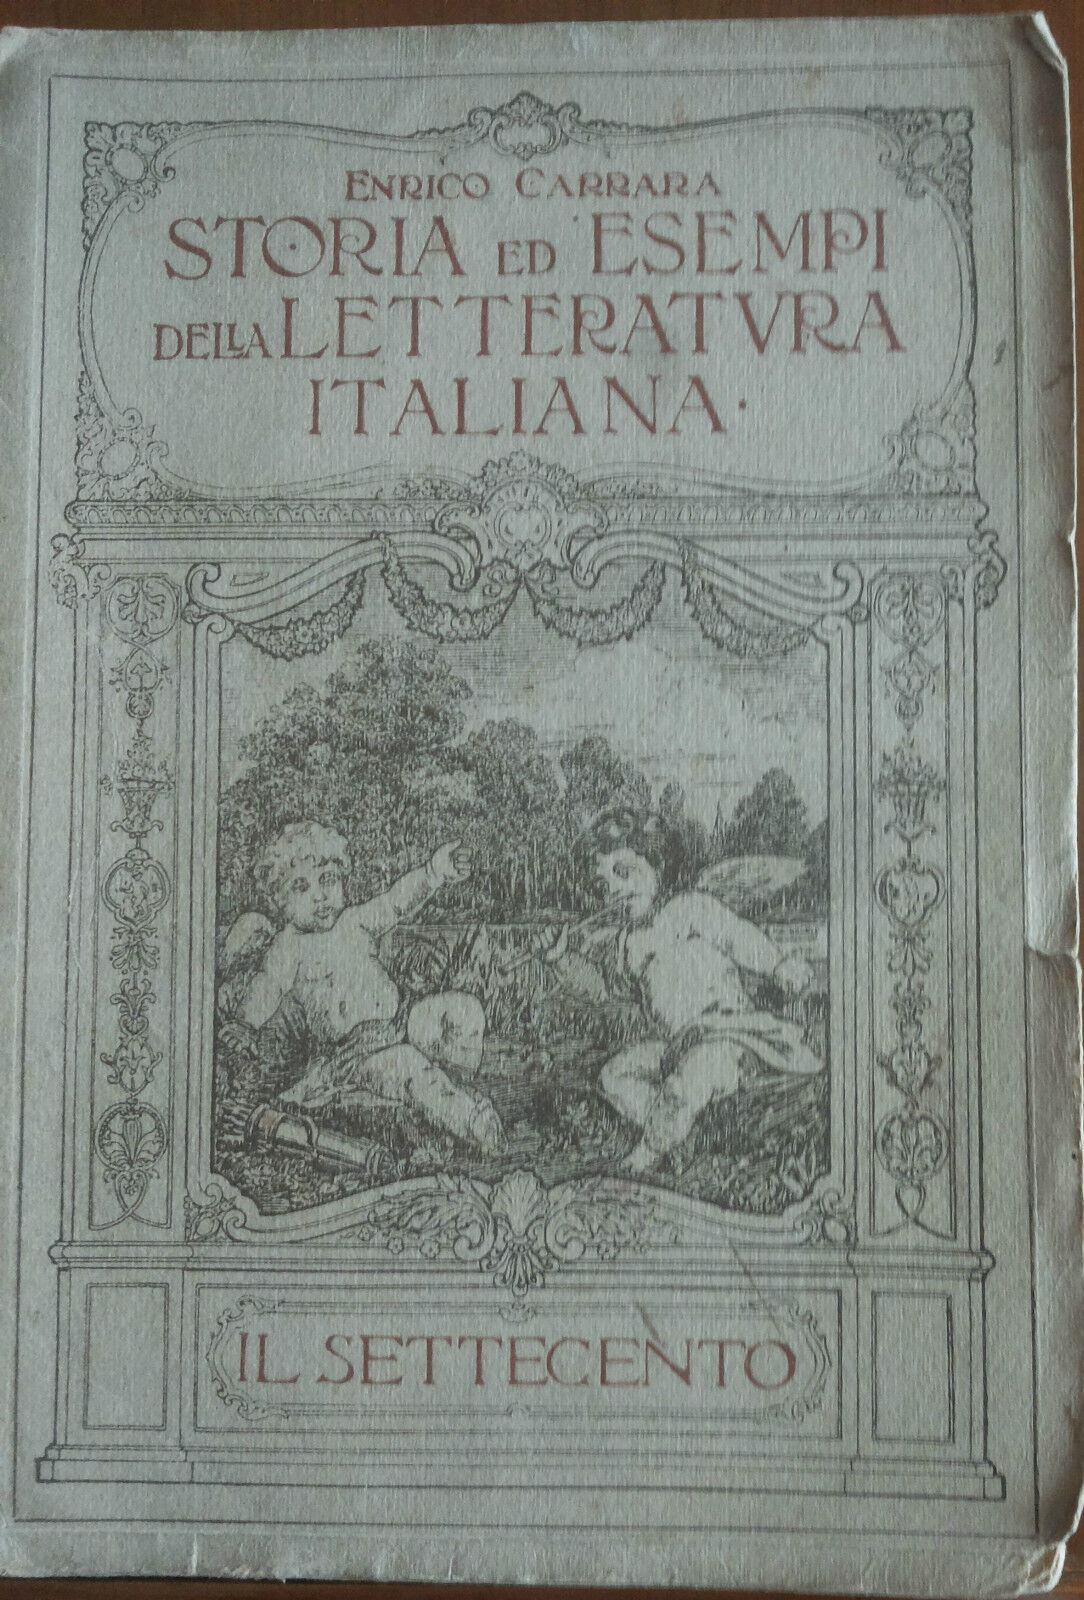 Storia ed esempi della letteratura italiana - Carrara - Signorelli,1919 - A